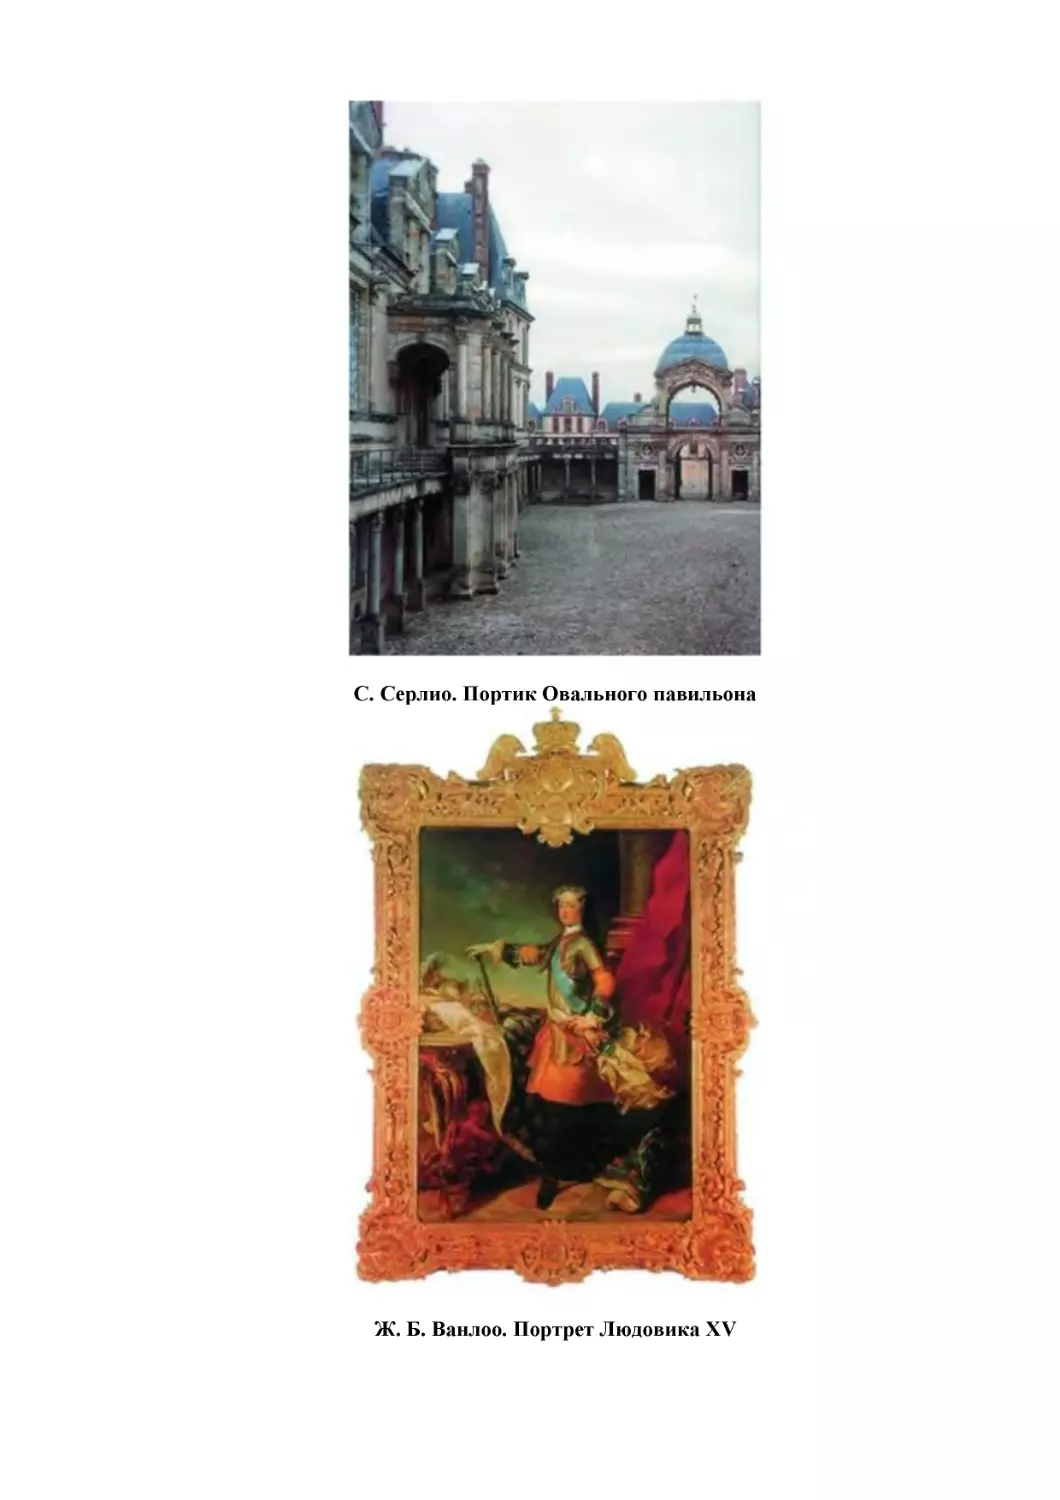 С. Серлио. Портик Овального павильона
Ж. Б. Ванлоо. Портрет Людовика XV